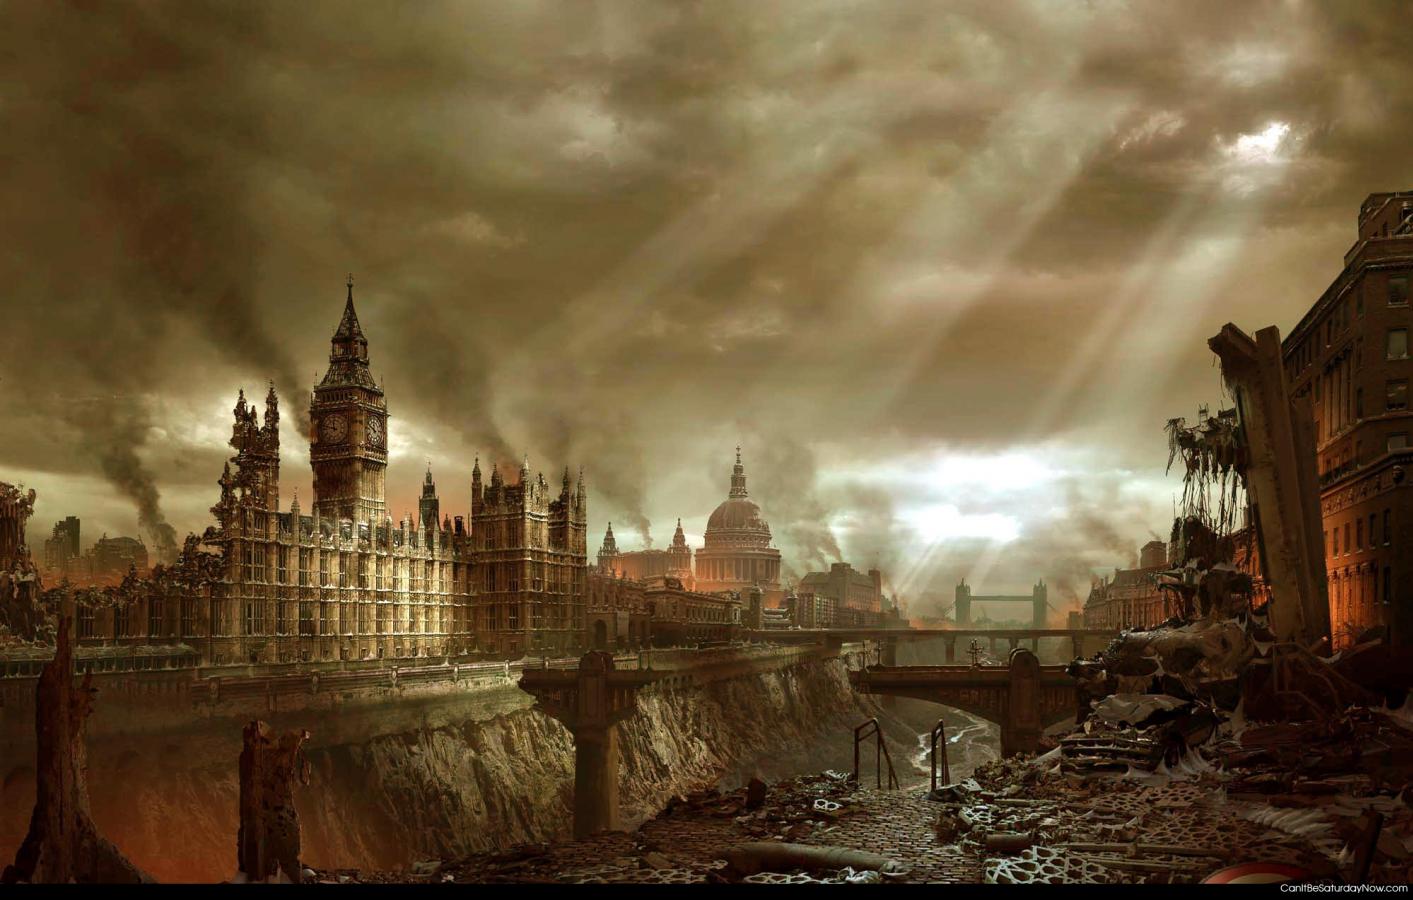 Destroyed - UK destroyed